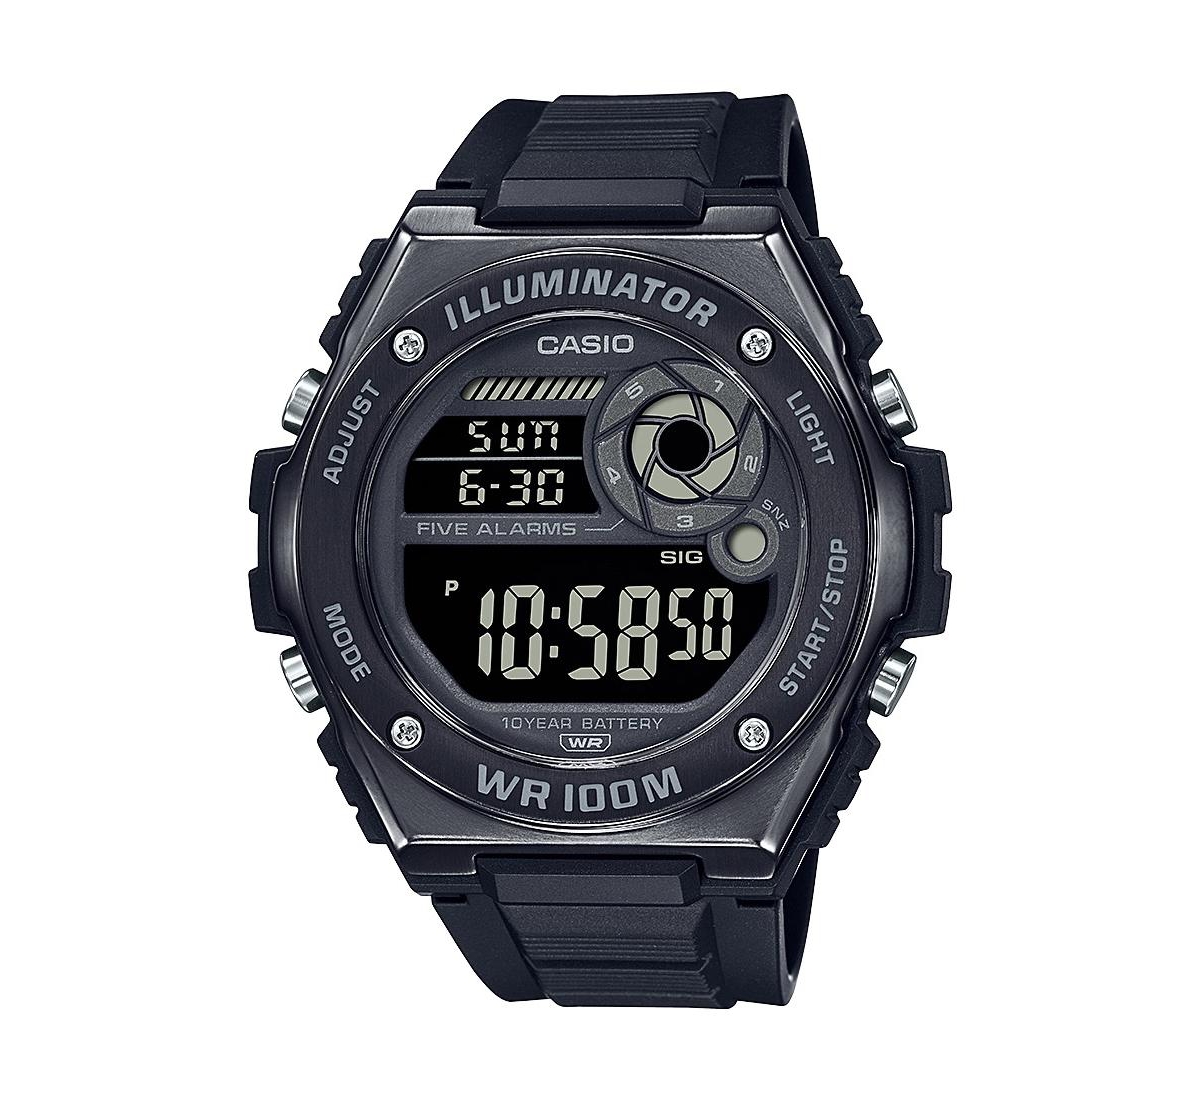 Casio Men's Digital Black Resin Watch 50.7mm, MWD100HB-1BV